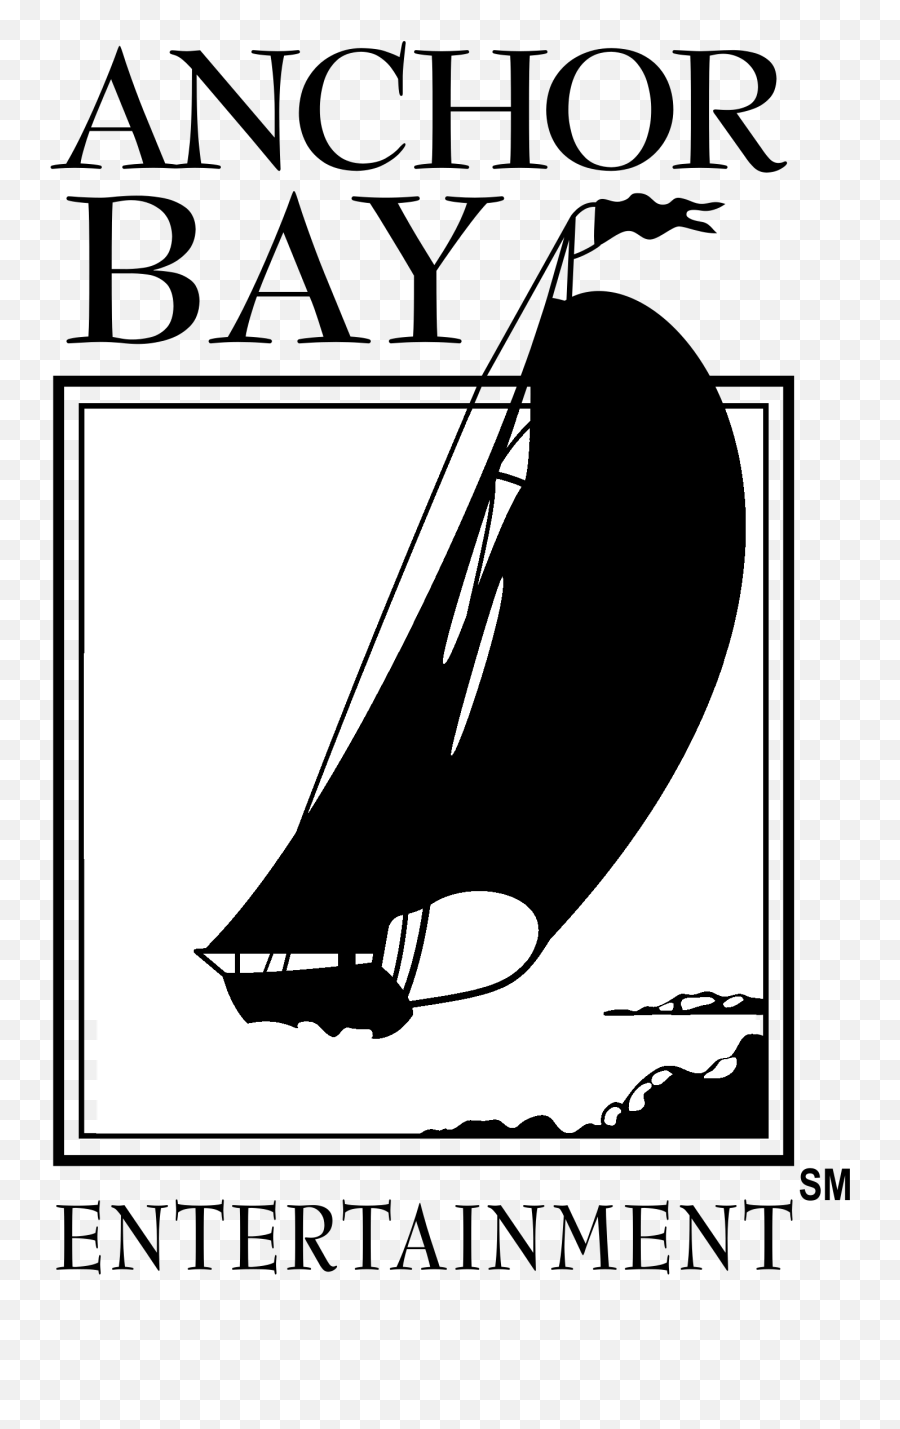 Anchor Bay Entertainment Logo - Logodix Anchor Bay Entertainment Emoji,Hit Entertainment Logo